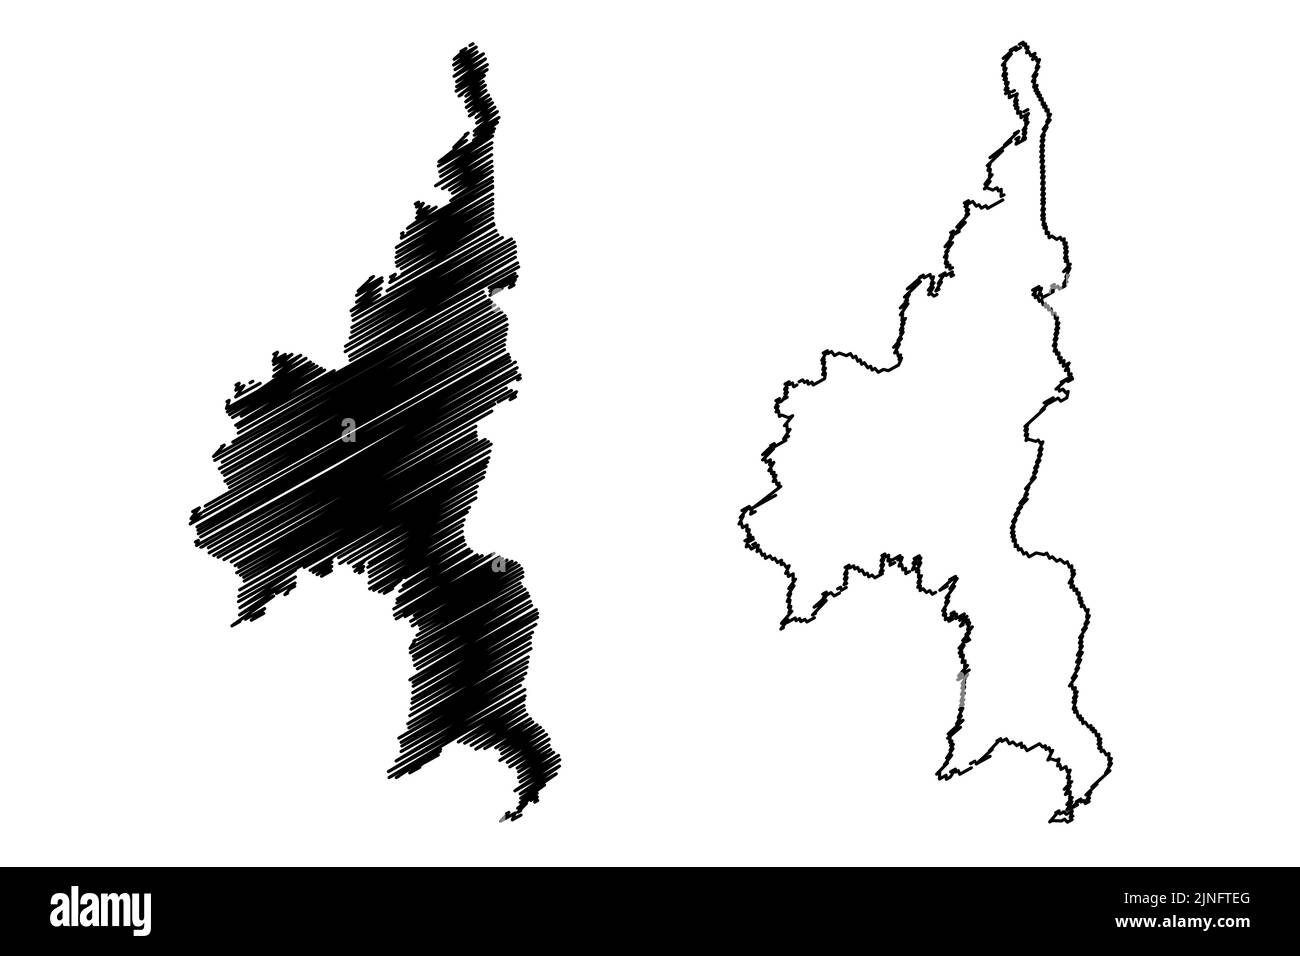 Isole CAL (arcipelago di Madeira, Portogallo, Repubblica portoghese) illustrazione vettoriale mappa, schizzo di scricbble Cal Islet o Ilheu de Baixo mappa Illustrazione Vettoriale